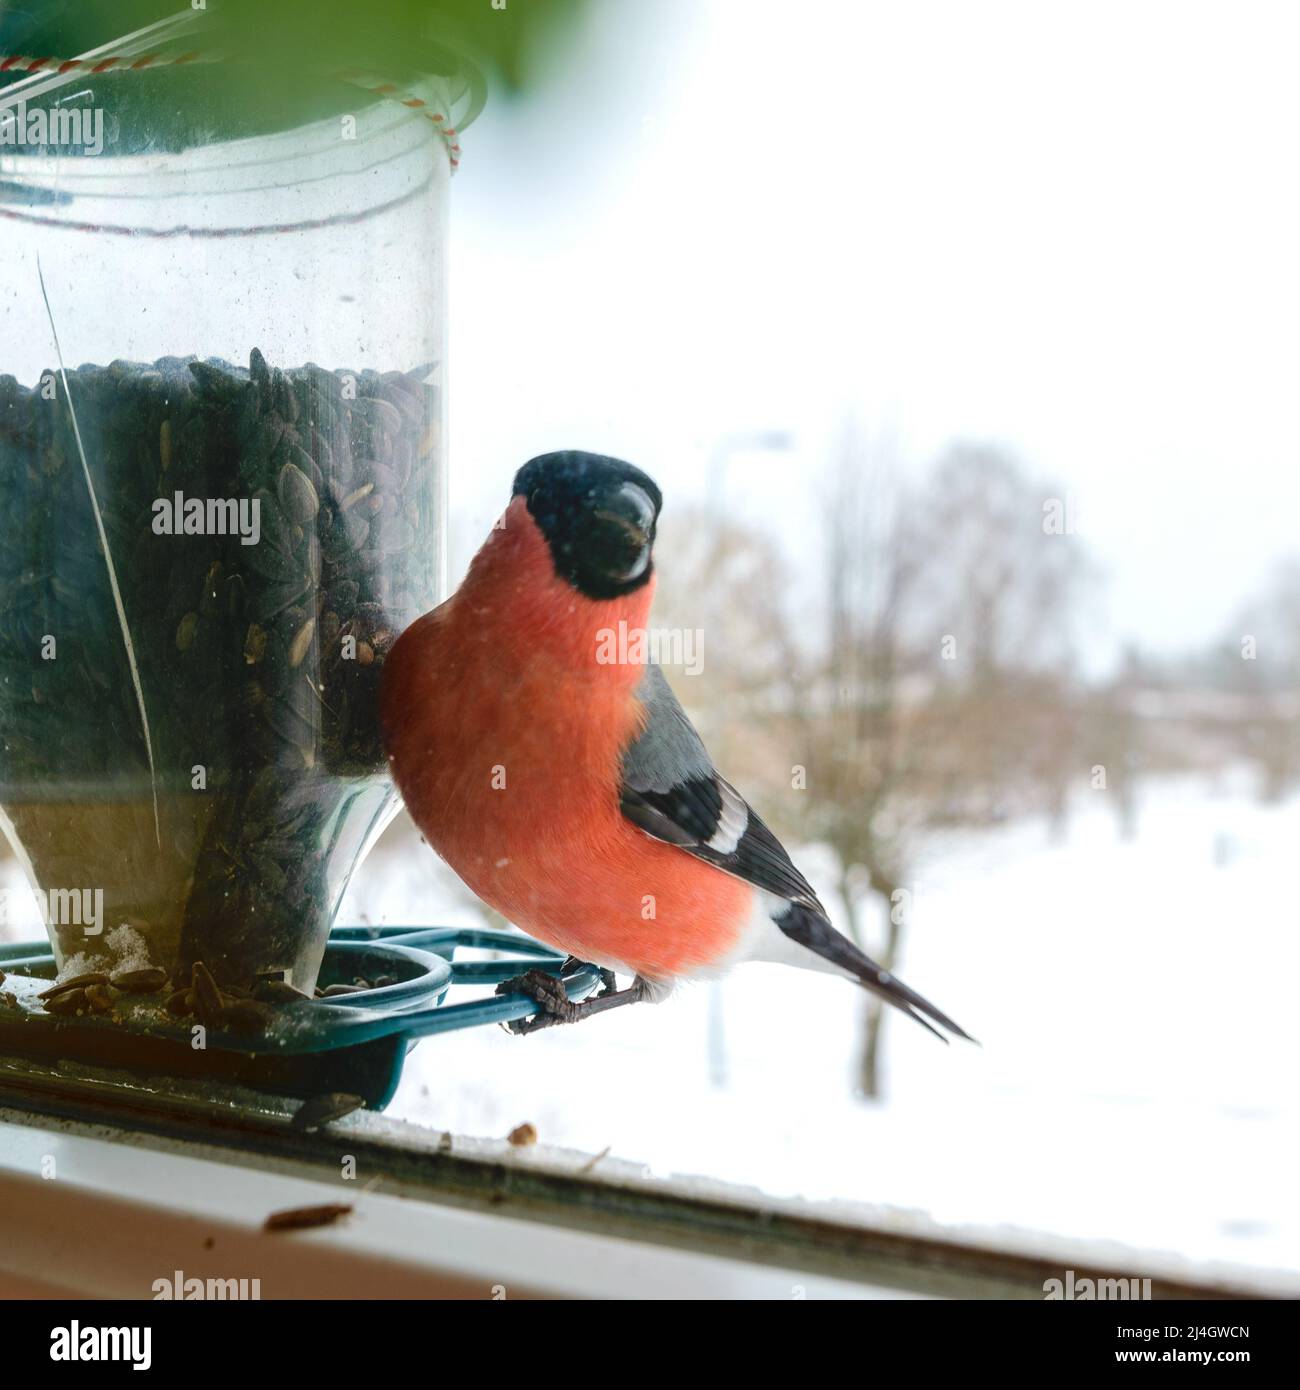 L'uccello mangia semi di girasole, si nutre dalla finestra, aiuta gli uccelli a trovare il cibo in inverno, fotografato attraverso il vetro della finestra, immagine sfocata Foto Stock